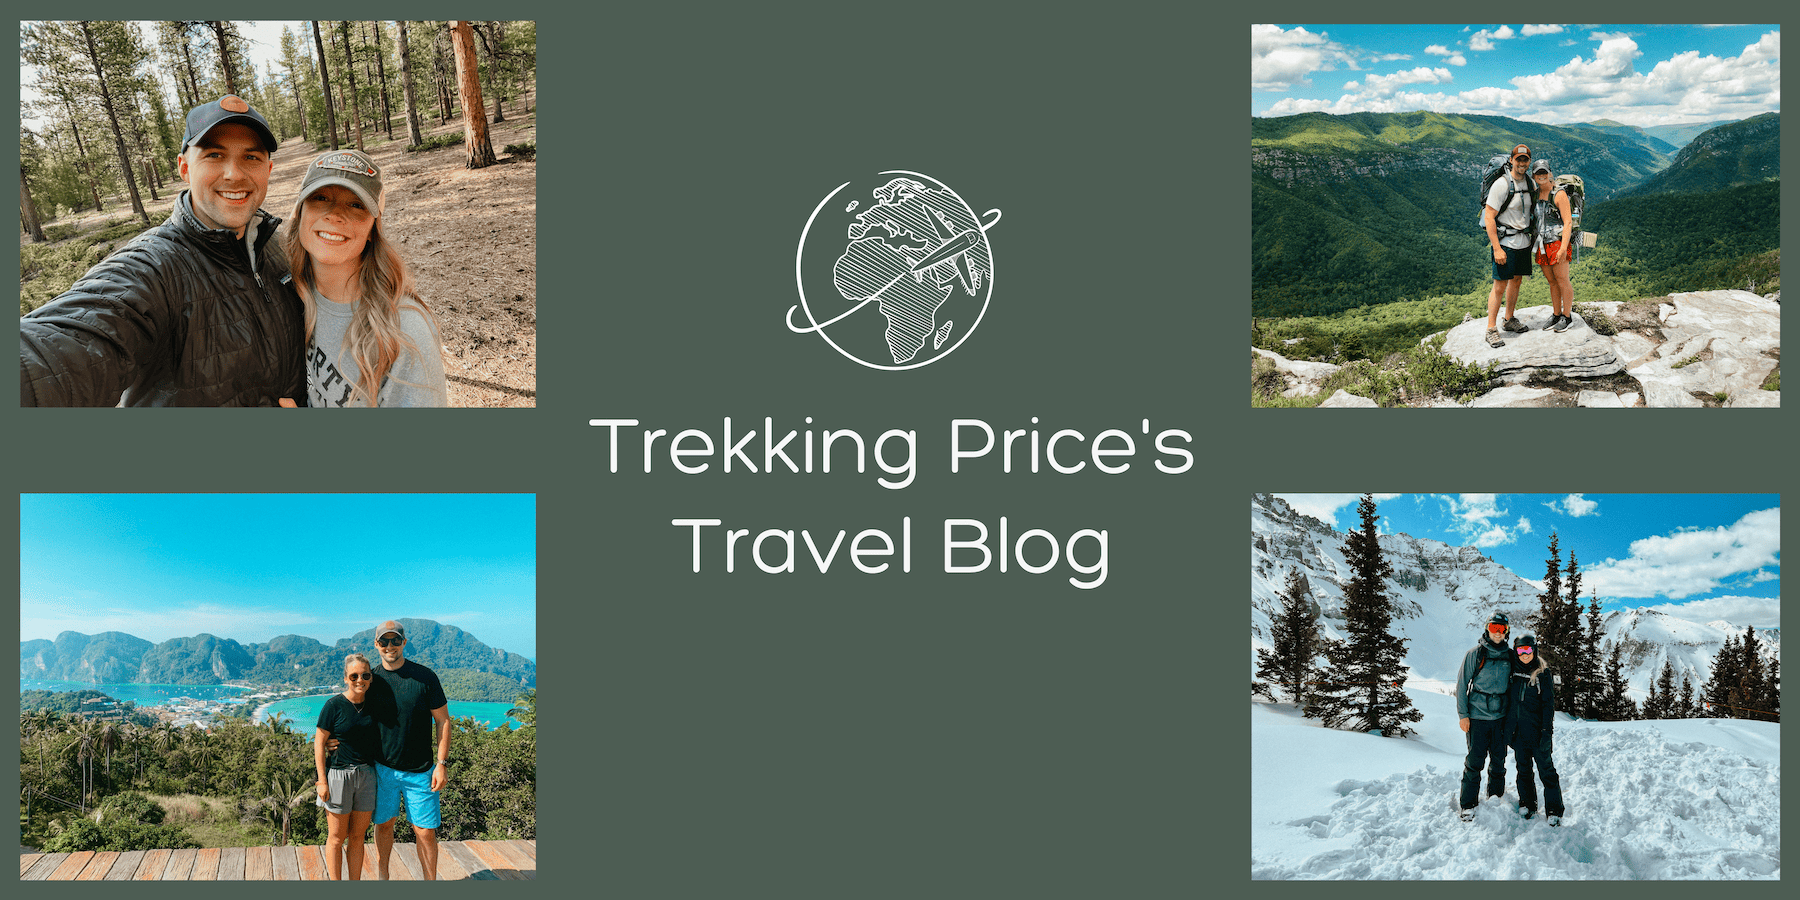 Trekking Price's homepage